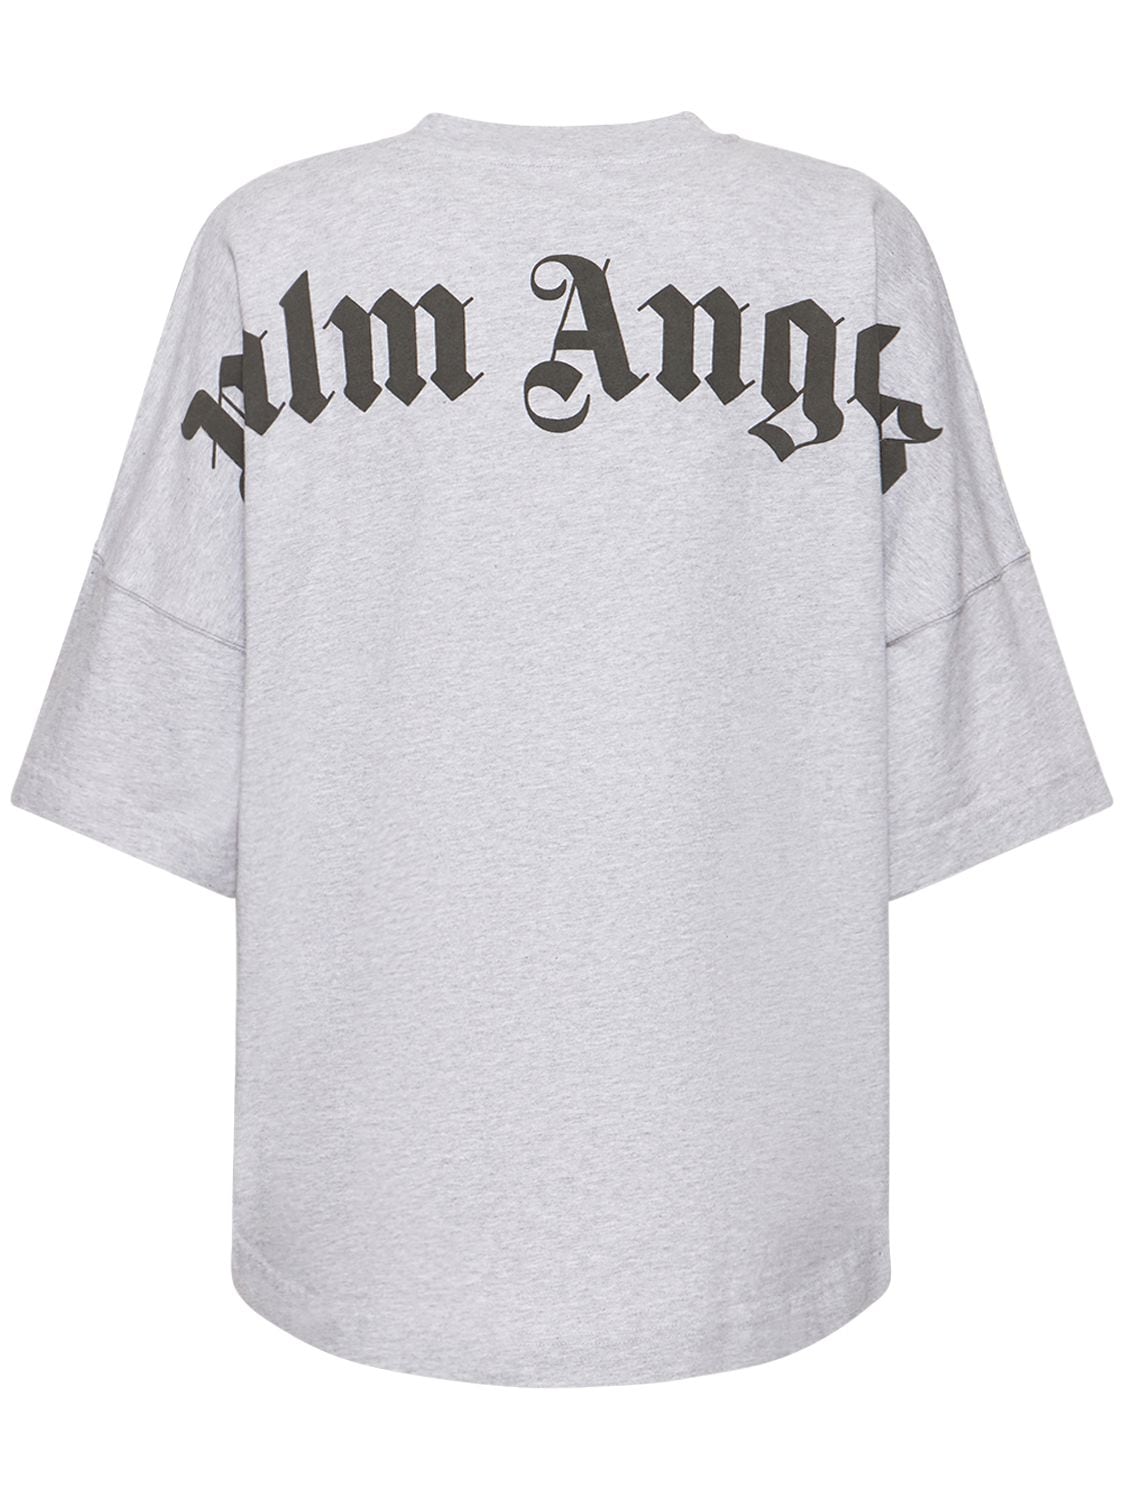 Palm Angels - Classic logo cotton jersey t-shirt - Grey | Luisaviaroma